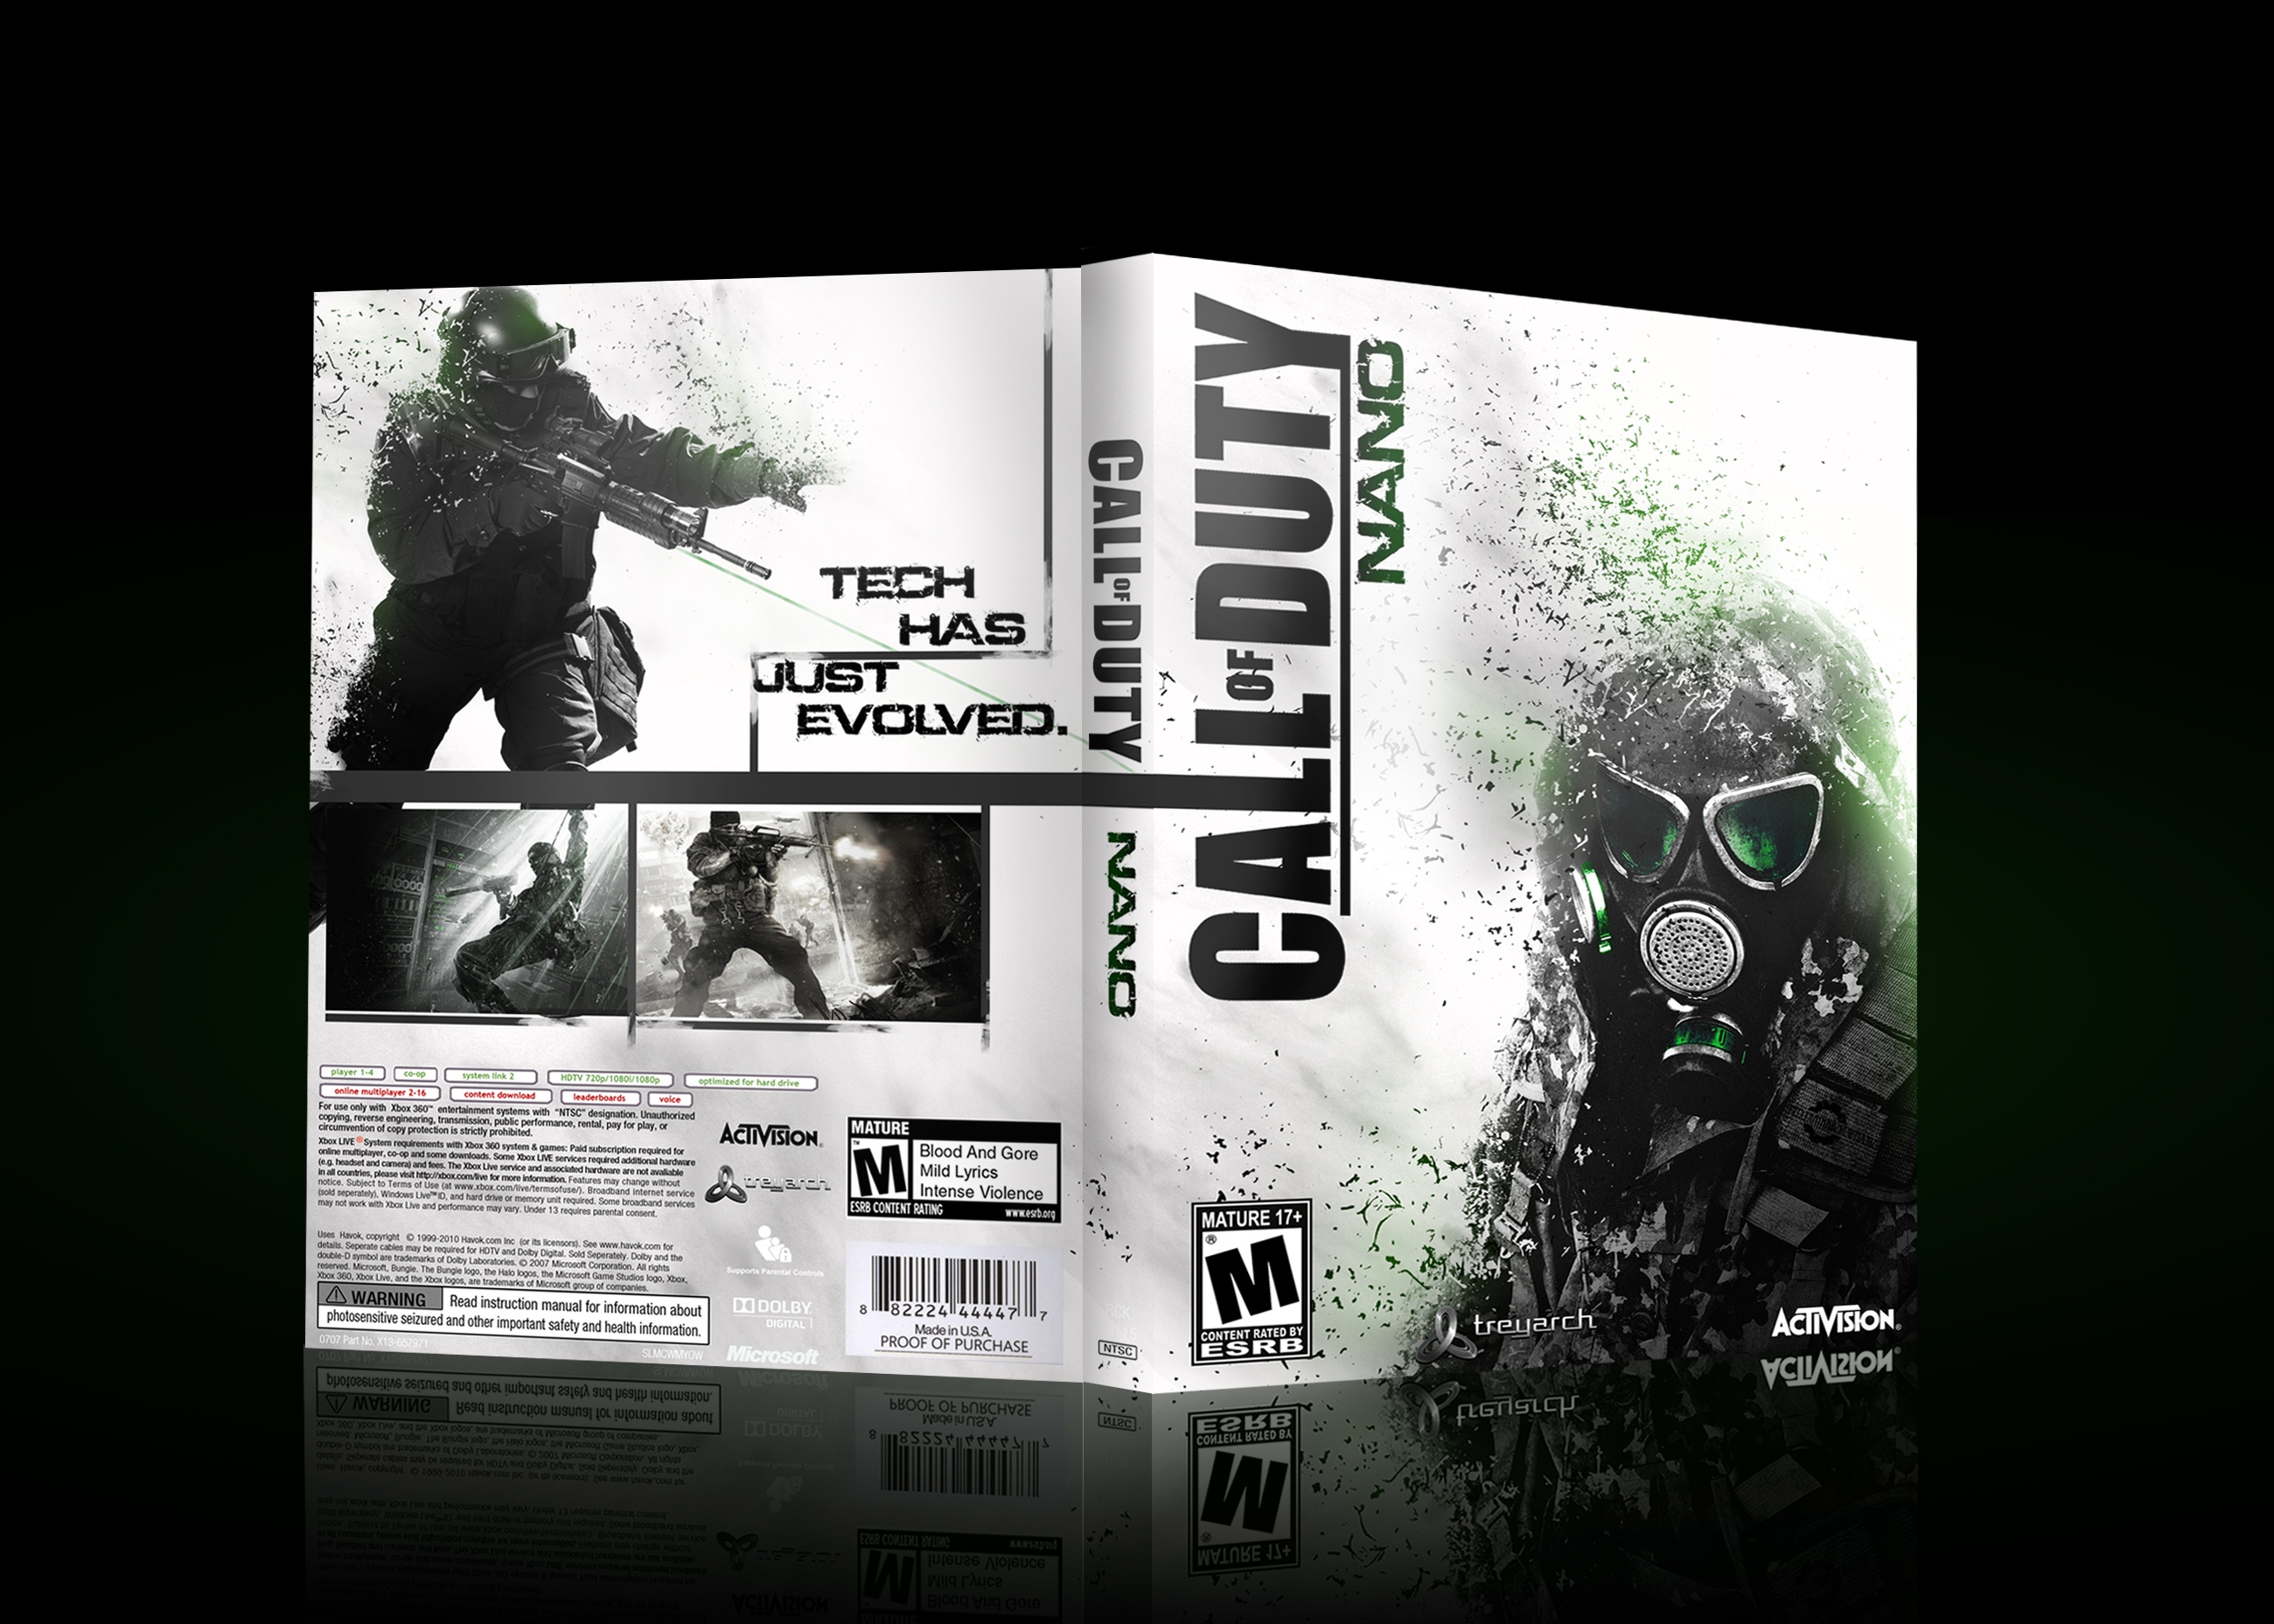 Call of Duty Nano box cover